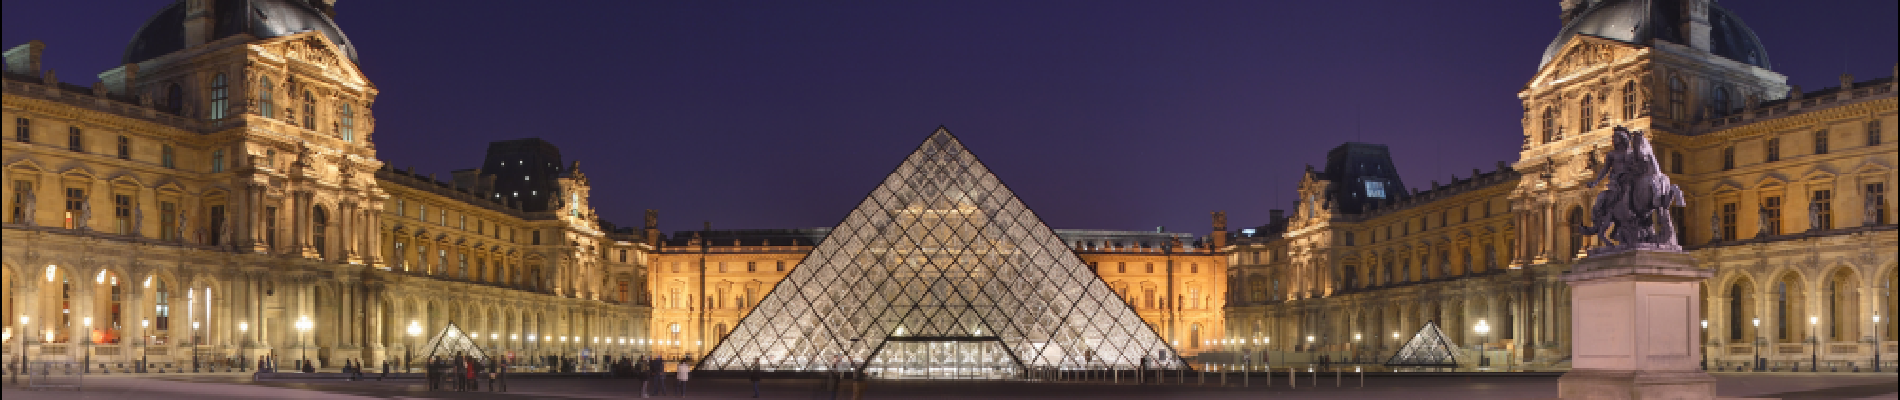 Point of interest Paris - Pyramide du Louvre - Photo